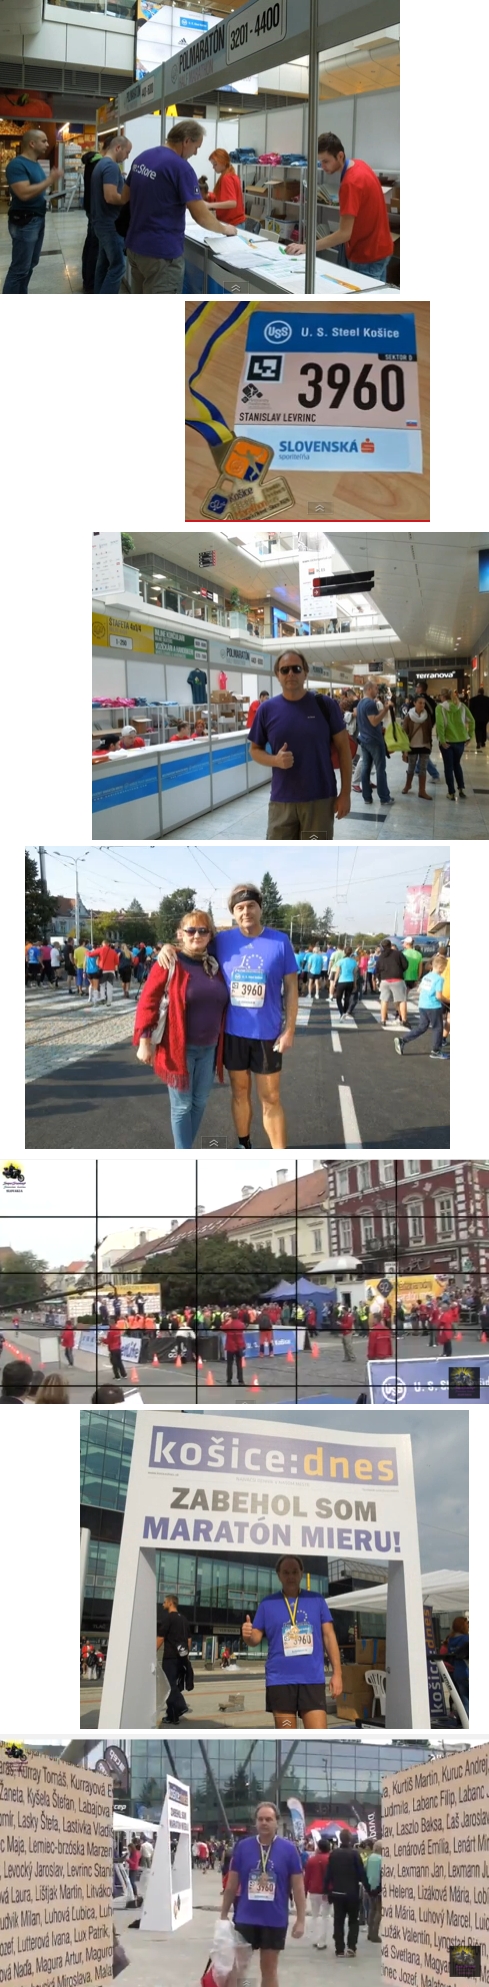 Medzinárodný Maratón Mieru 2015 Košice - Polmaratón - Stanislav Levrinc - SuperStanley9